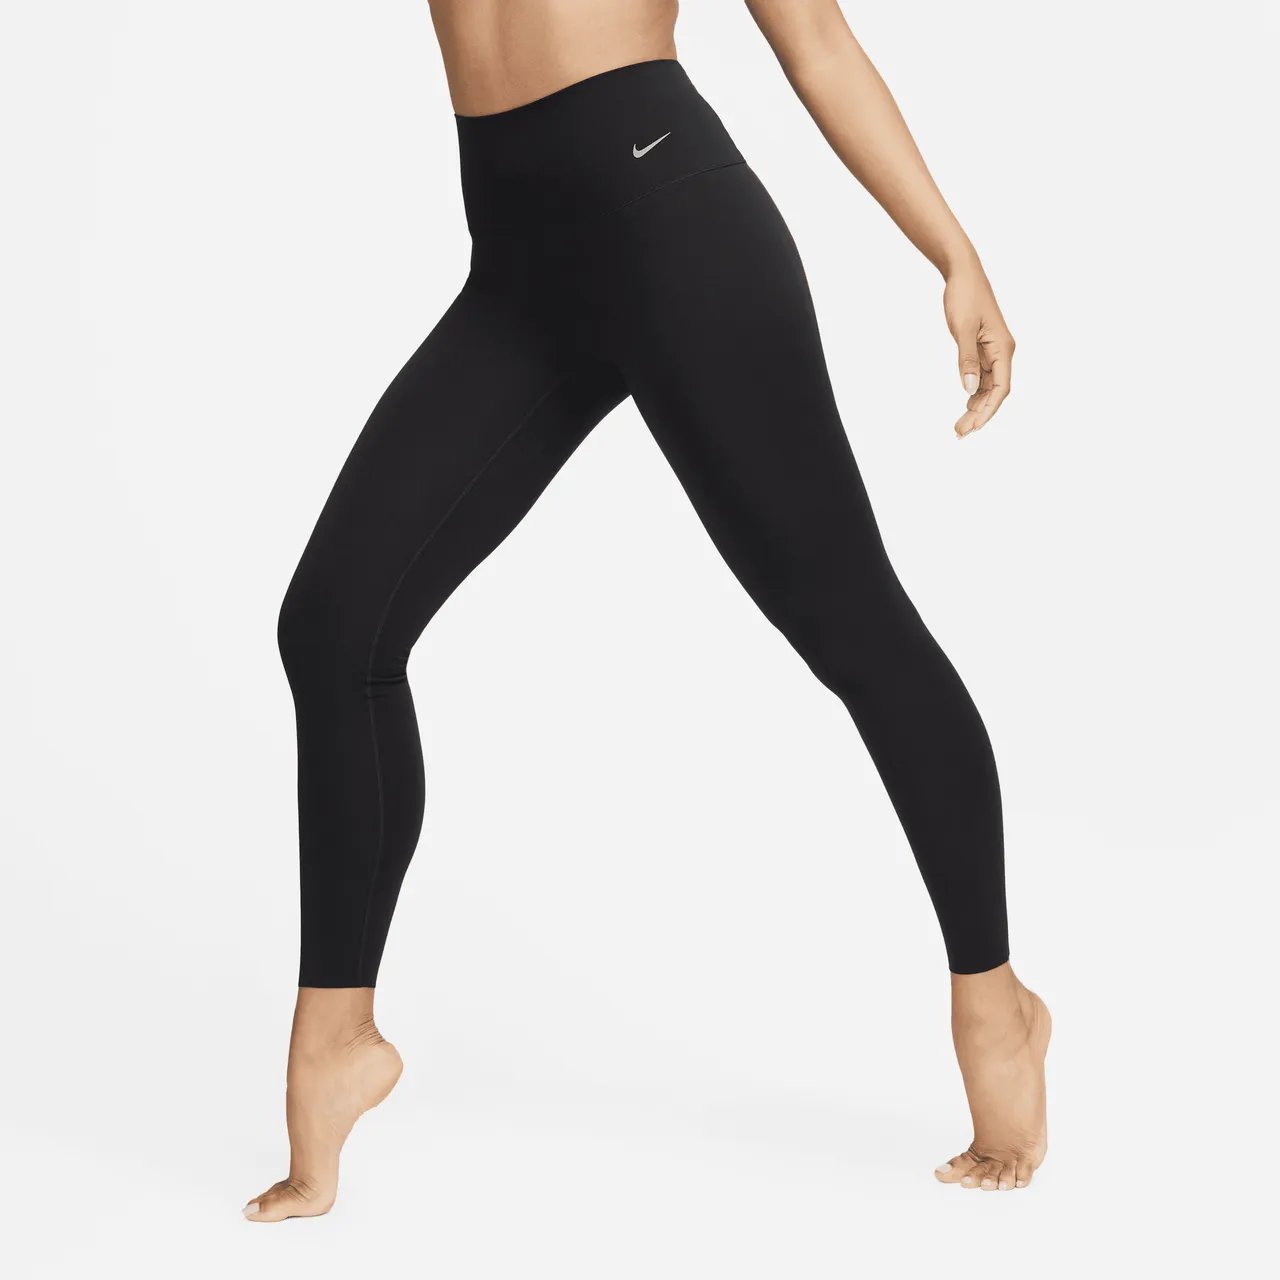 Nike Zenvy Women's Gentle-Support High-Waisted Full-Length Leggings - Black - Nylon